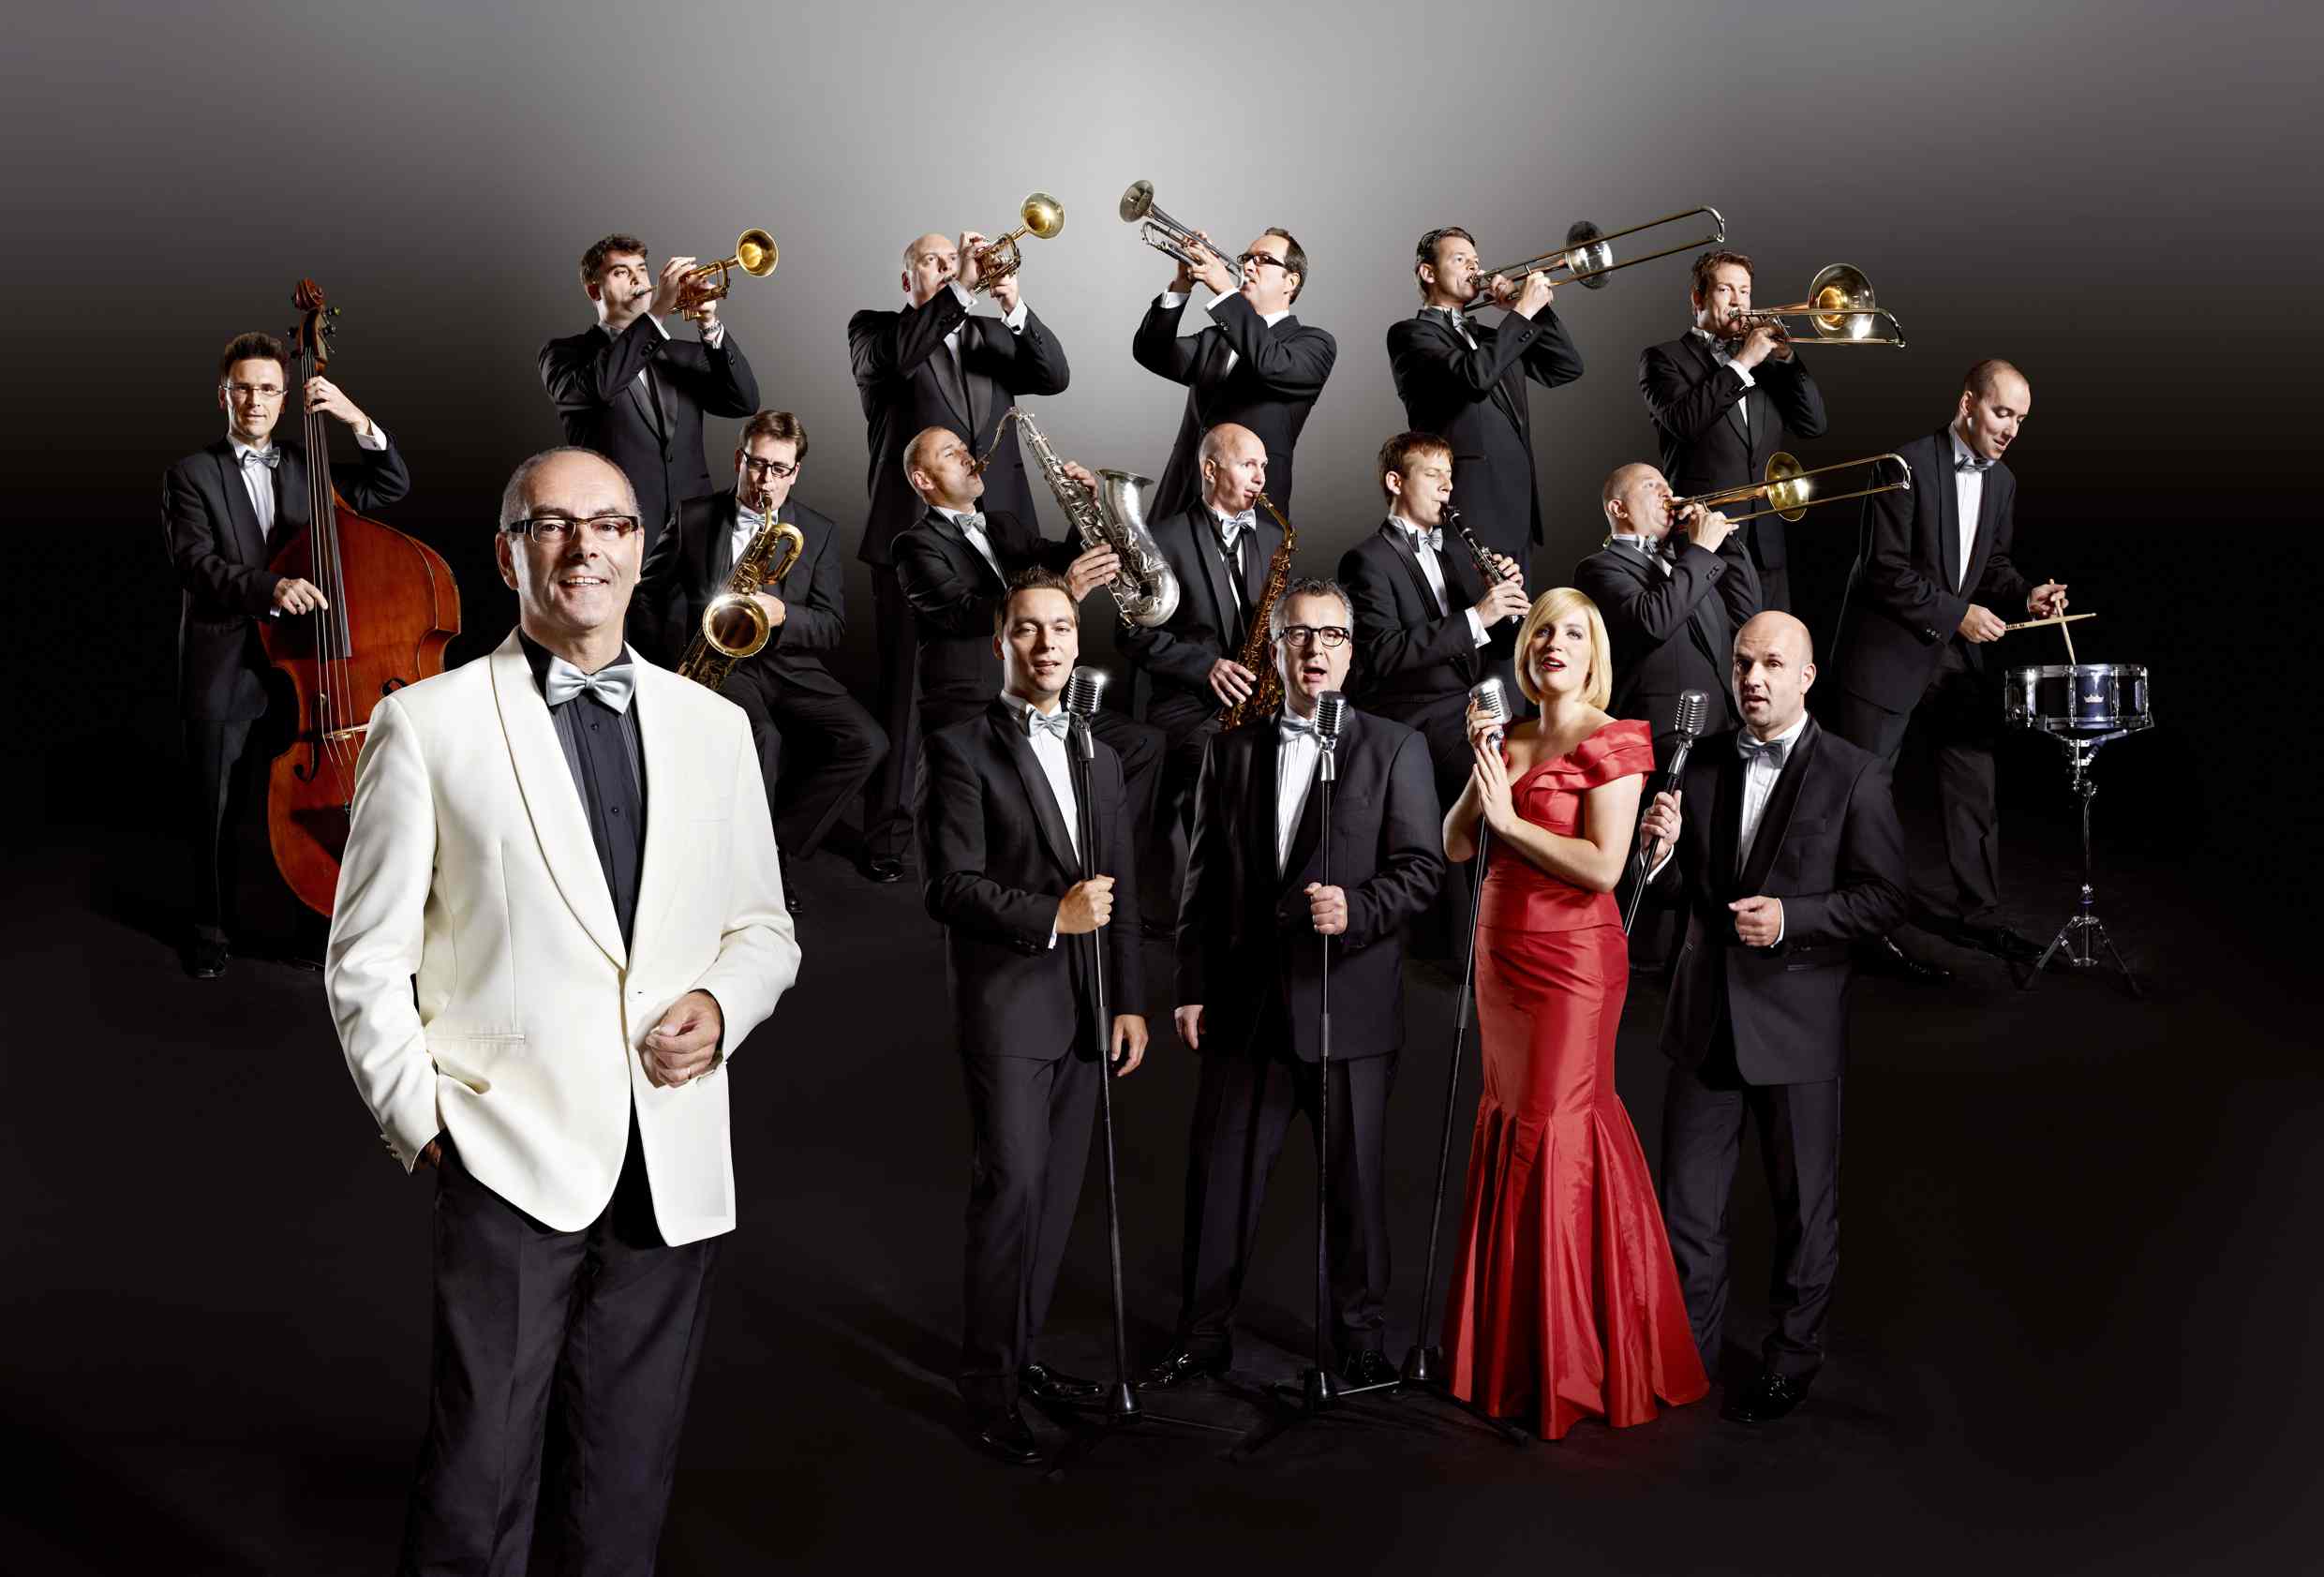 Am 29. März 2014 gastiert das Glenn Miller Orchestra in Lohfelden.